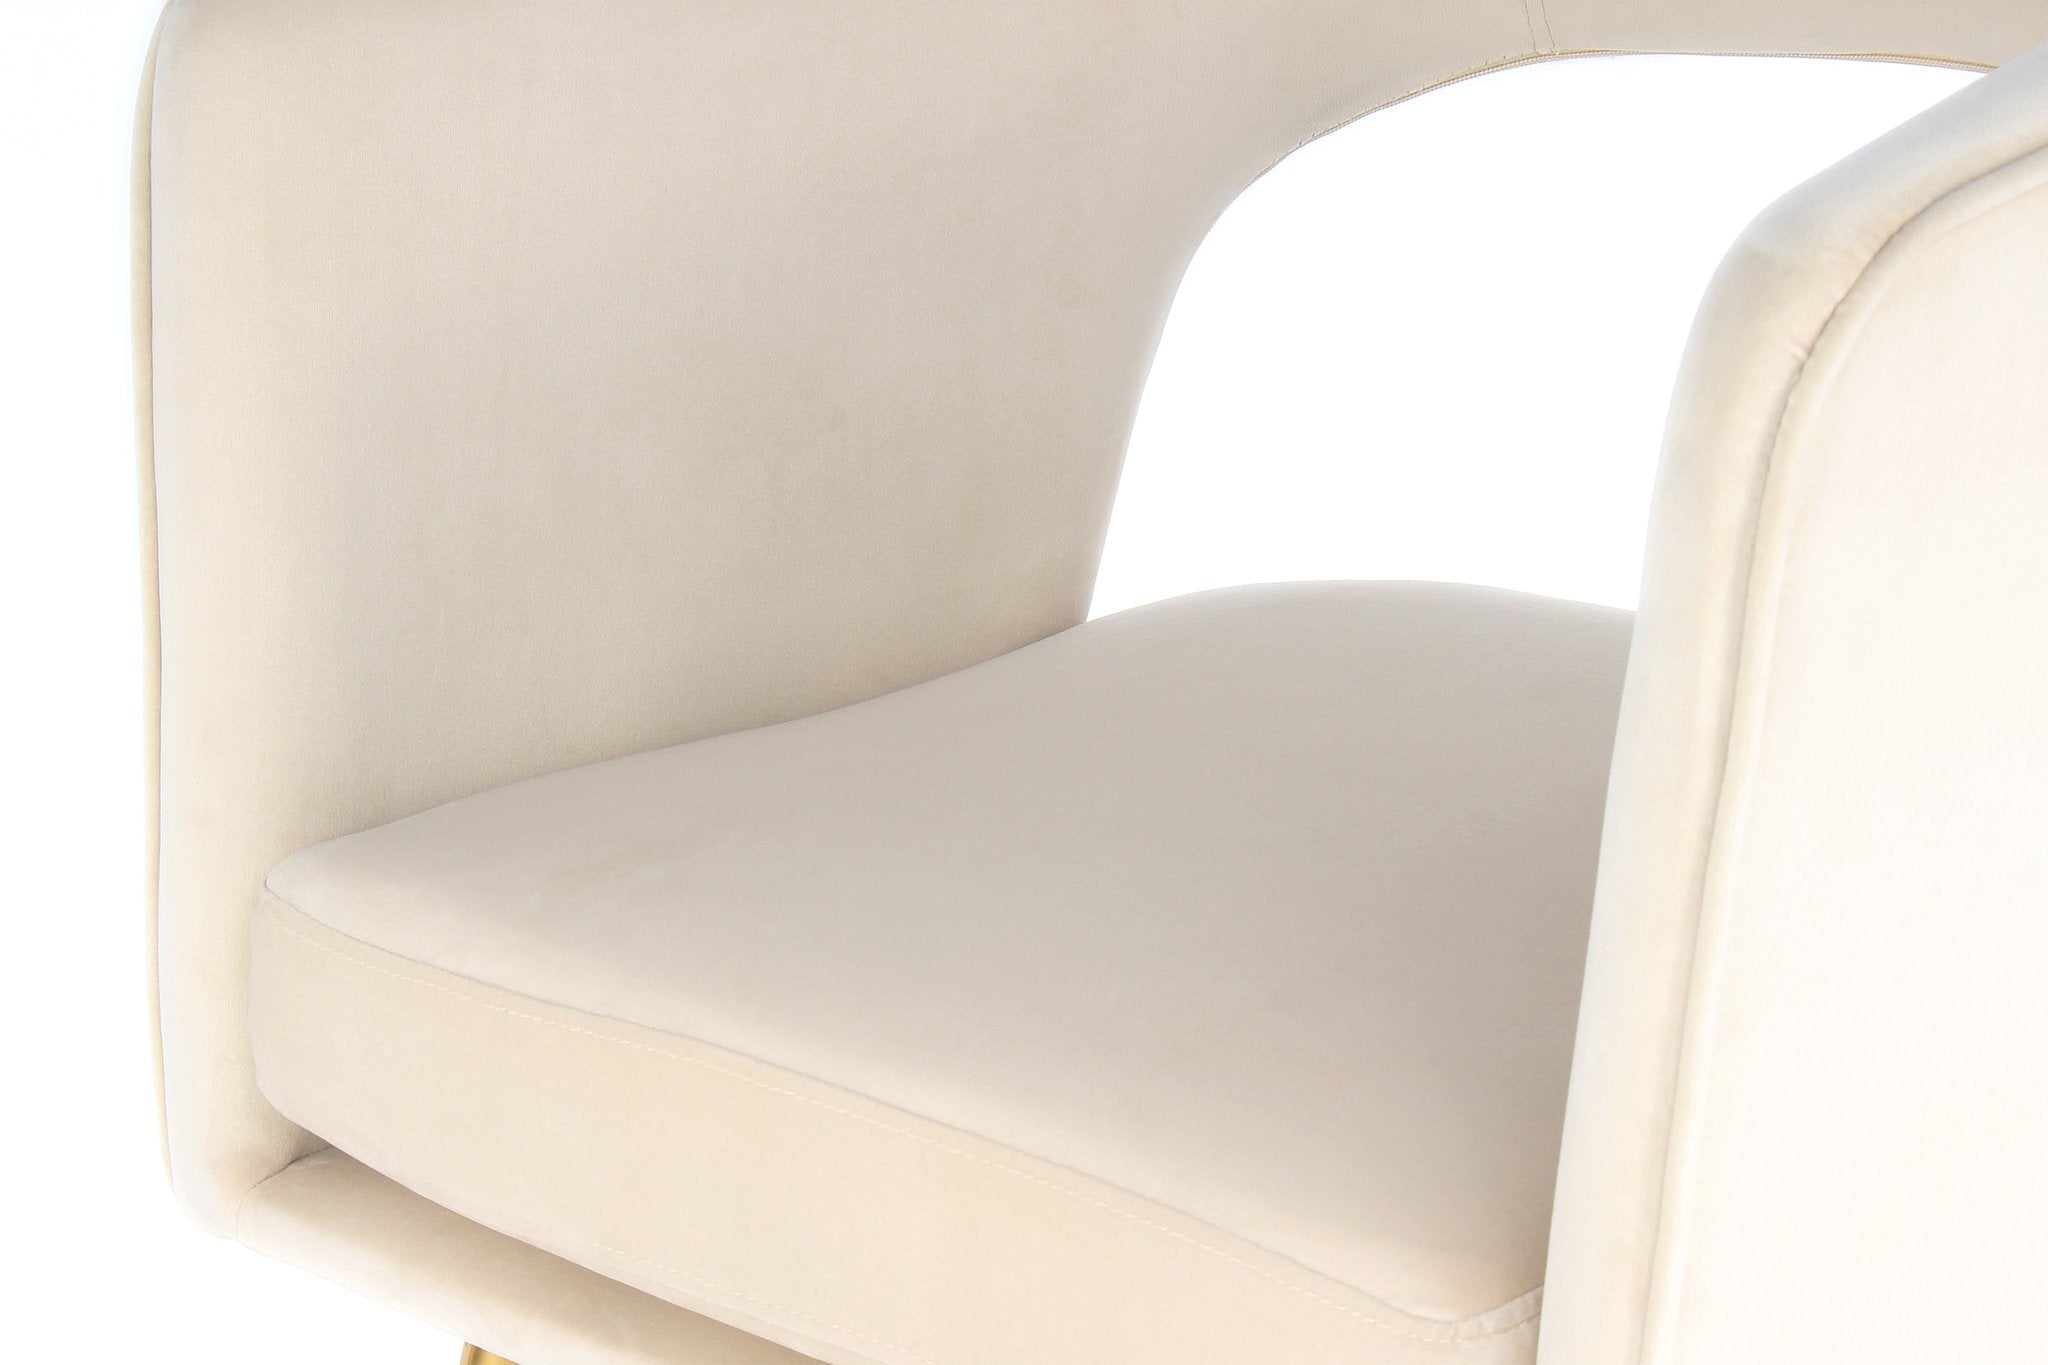 Lalee Avenue Chair Jolene 125 (LxWxH) 63 x 60 x 77 cm